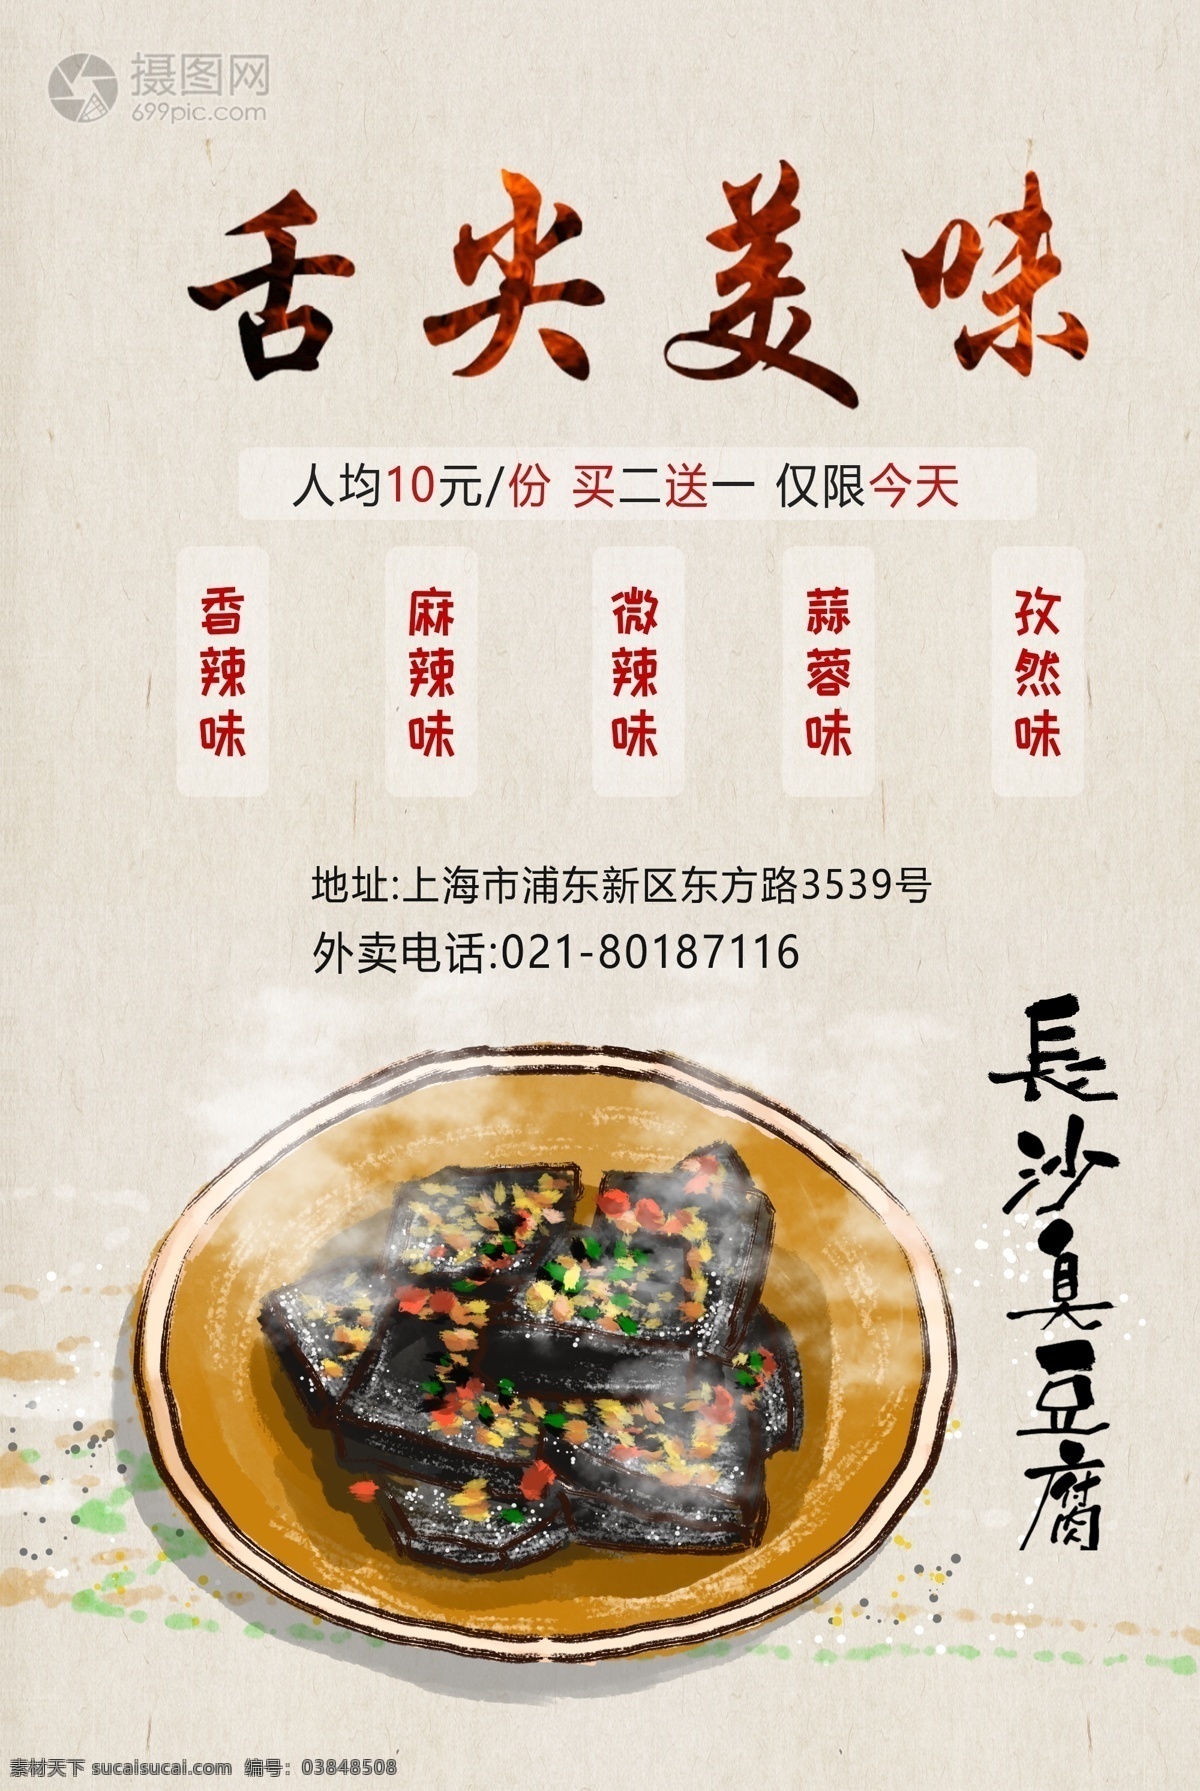 臭豆腐 美食 小吃 海报 促销 宣传 美味 可口 特色小吃 食物 餐饮美食 美食海报